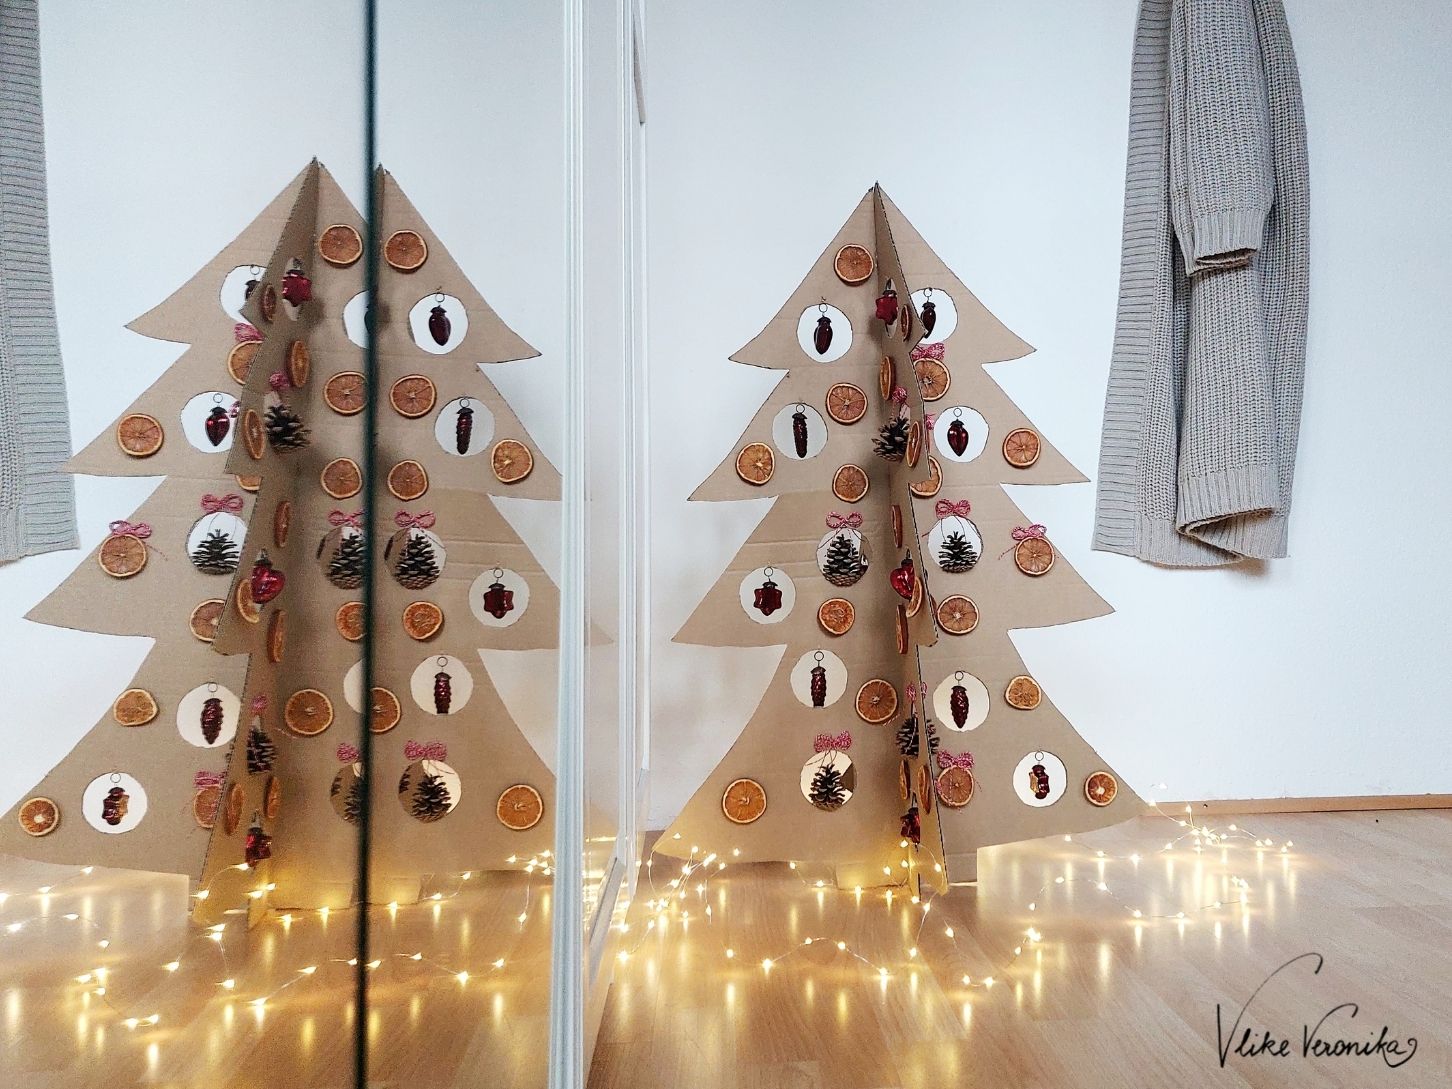 Bastelanleitung für einen Weihnachtsbaum aus Karton zum Basteln mit Pappe.